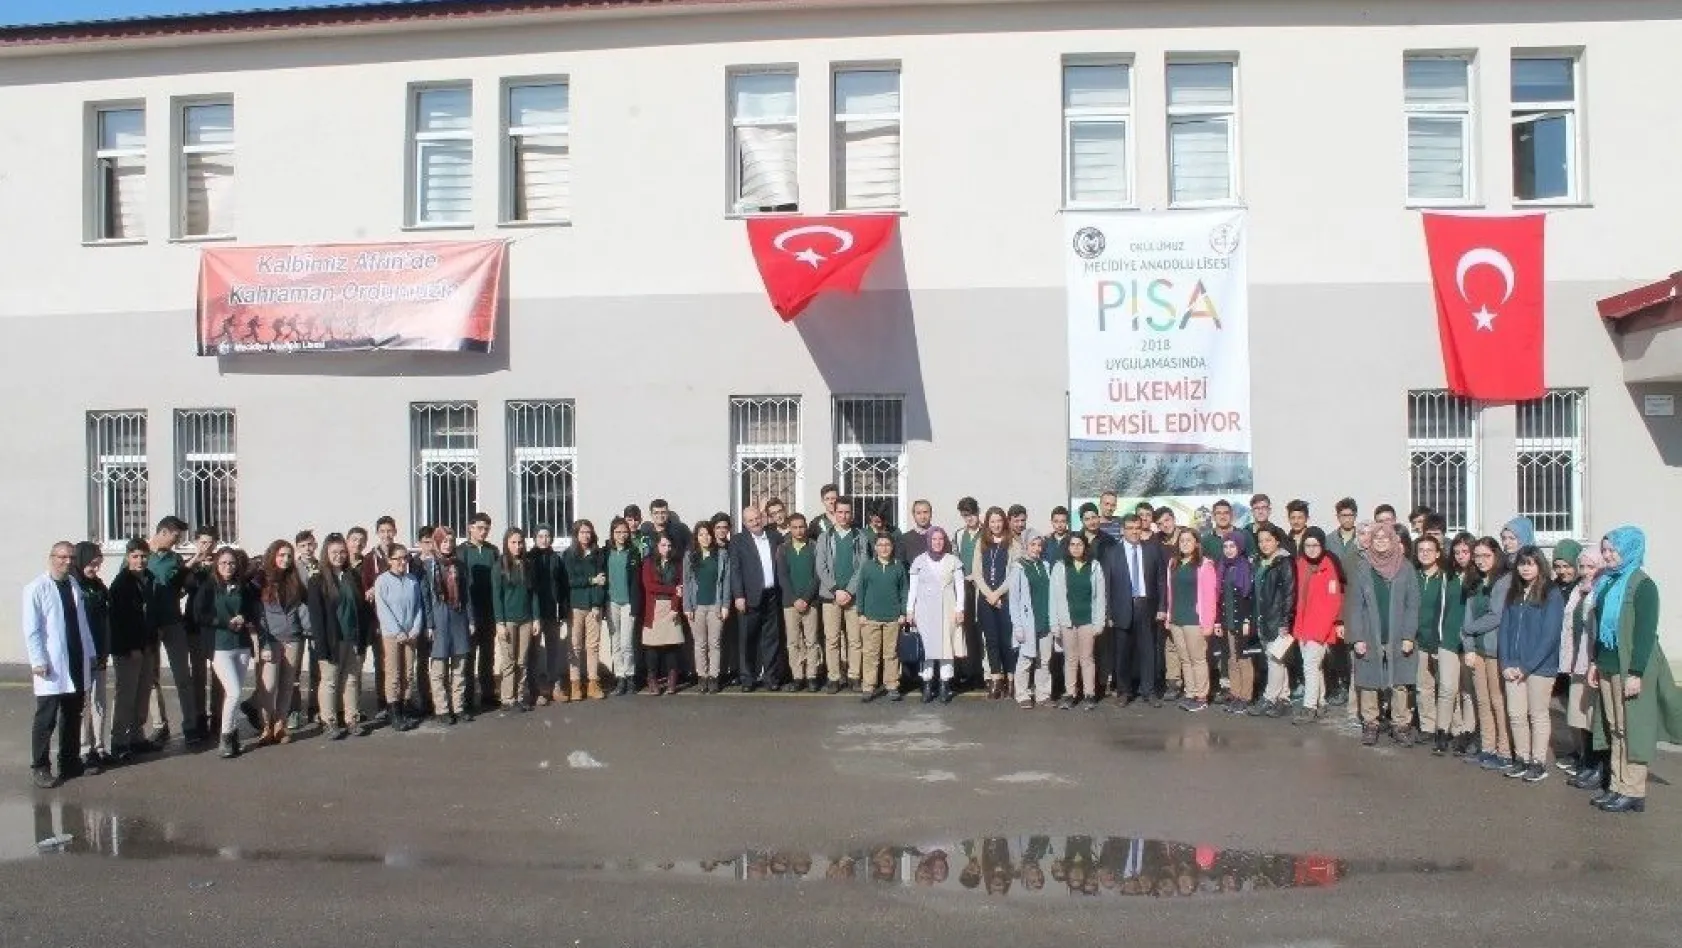 PISA'da Mecidiye Anadolu Lisesi temsil edecek
